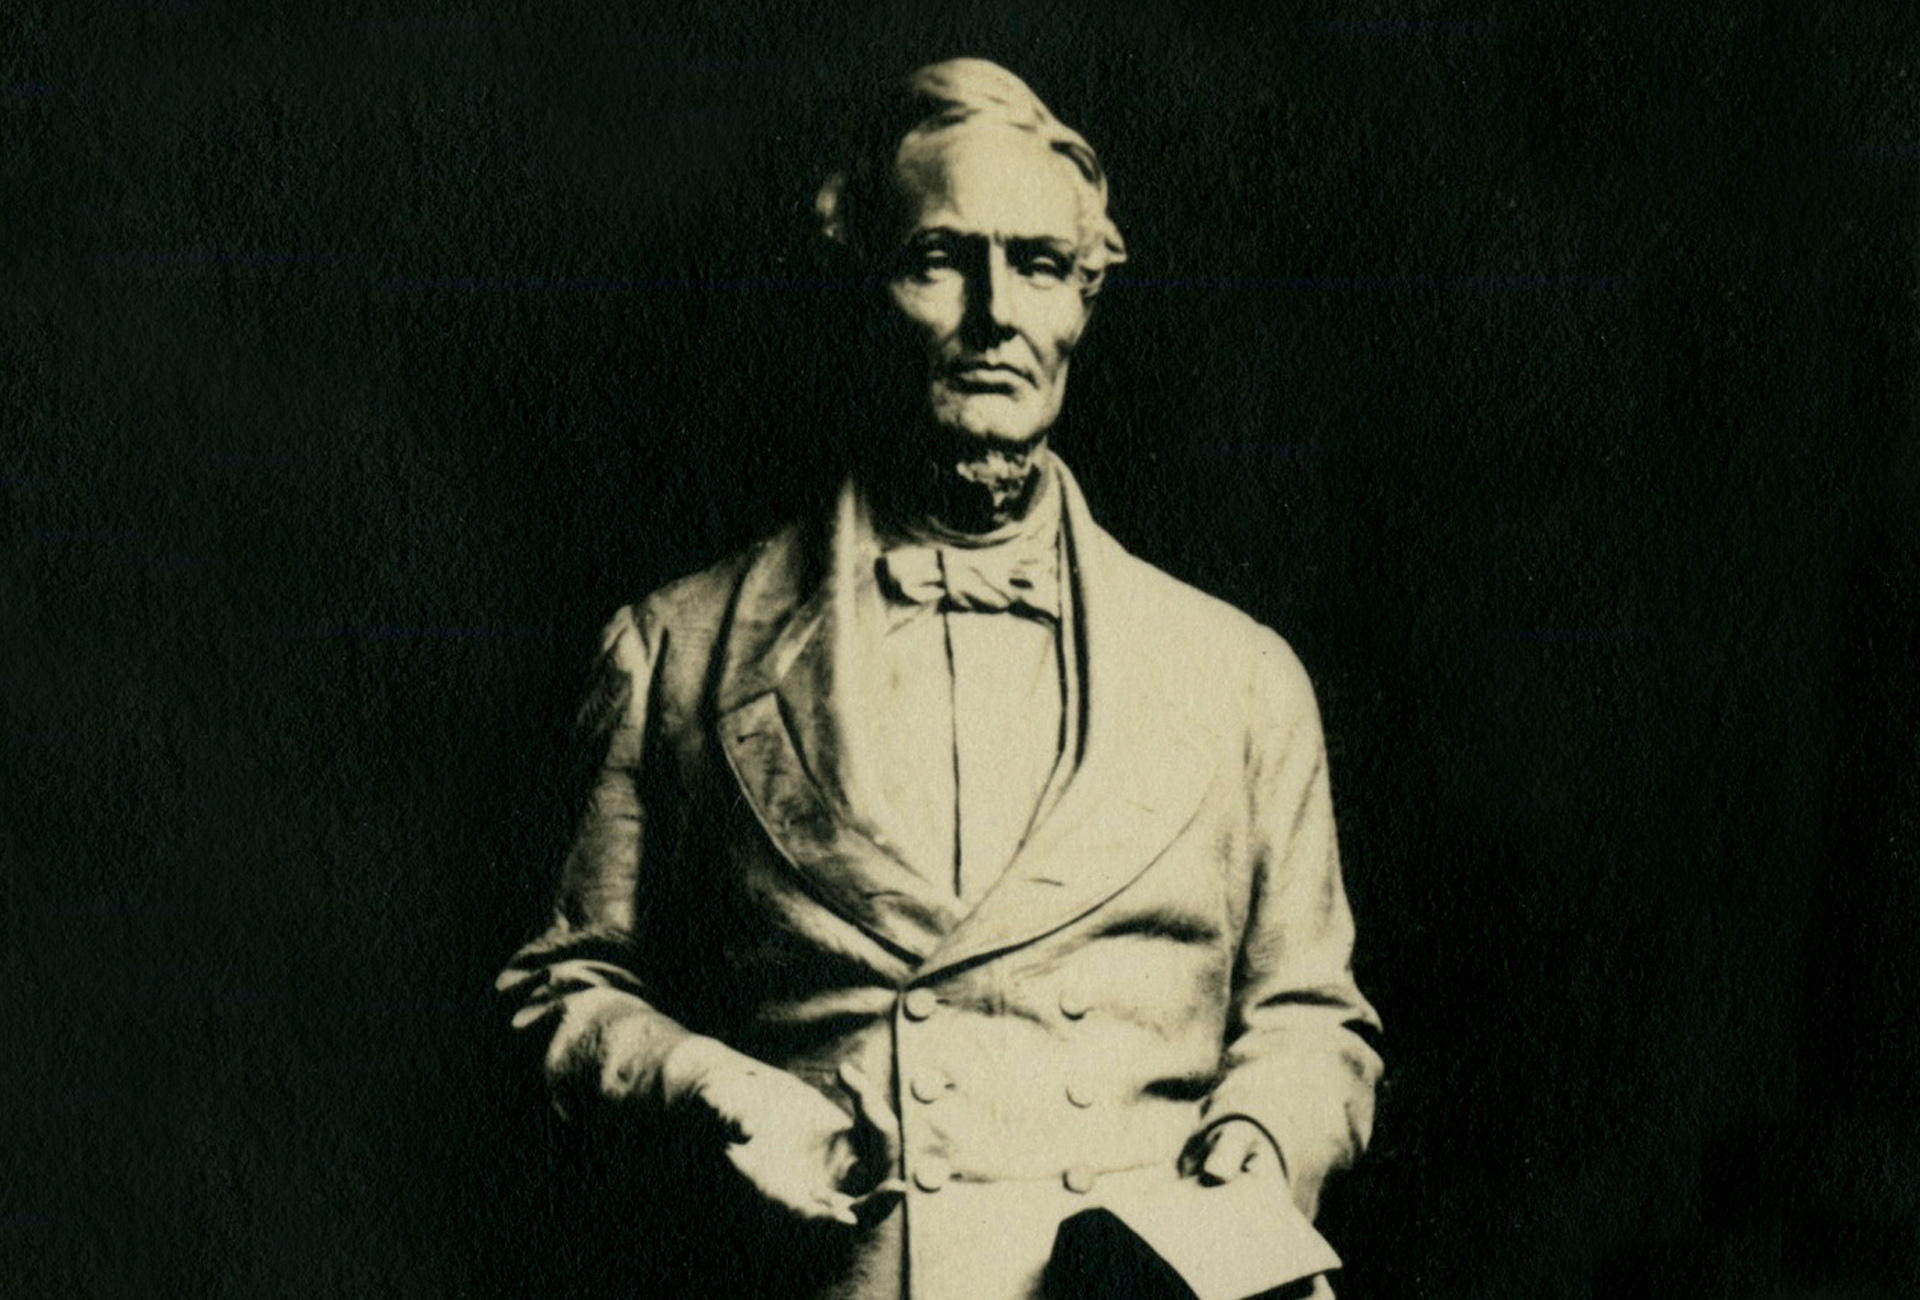 Black and white photograph of the Jefferson Davis statue in sculptor Pompeo Coppini's studio.